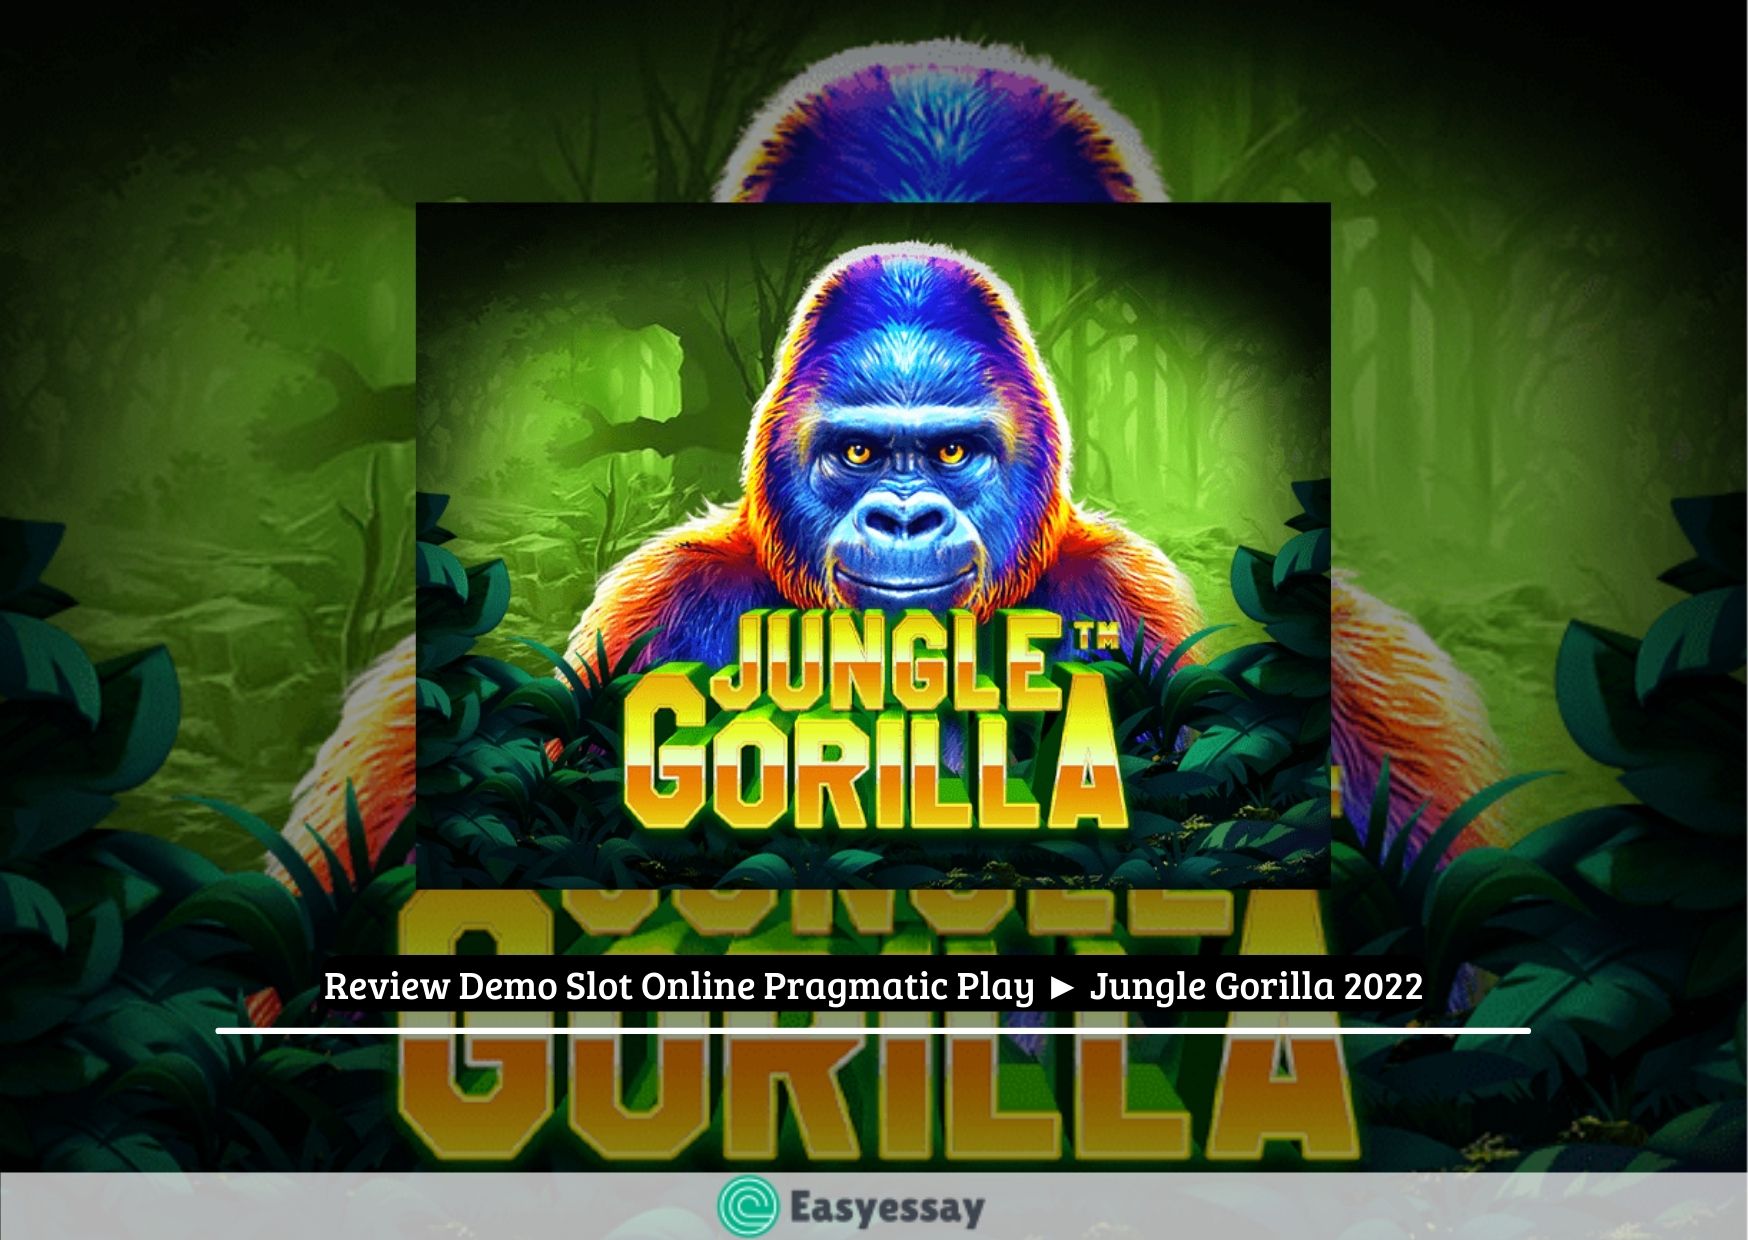 Review Demo Slot Online Pragmatic Play ► Jungle Gorilla 2022